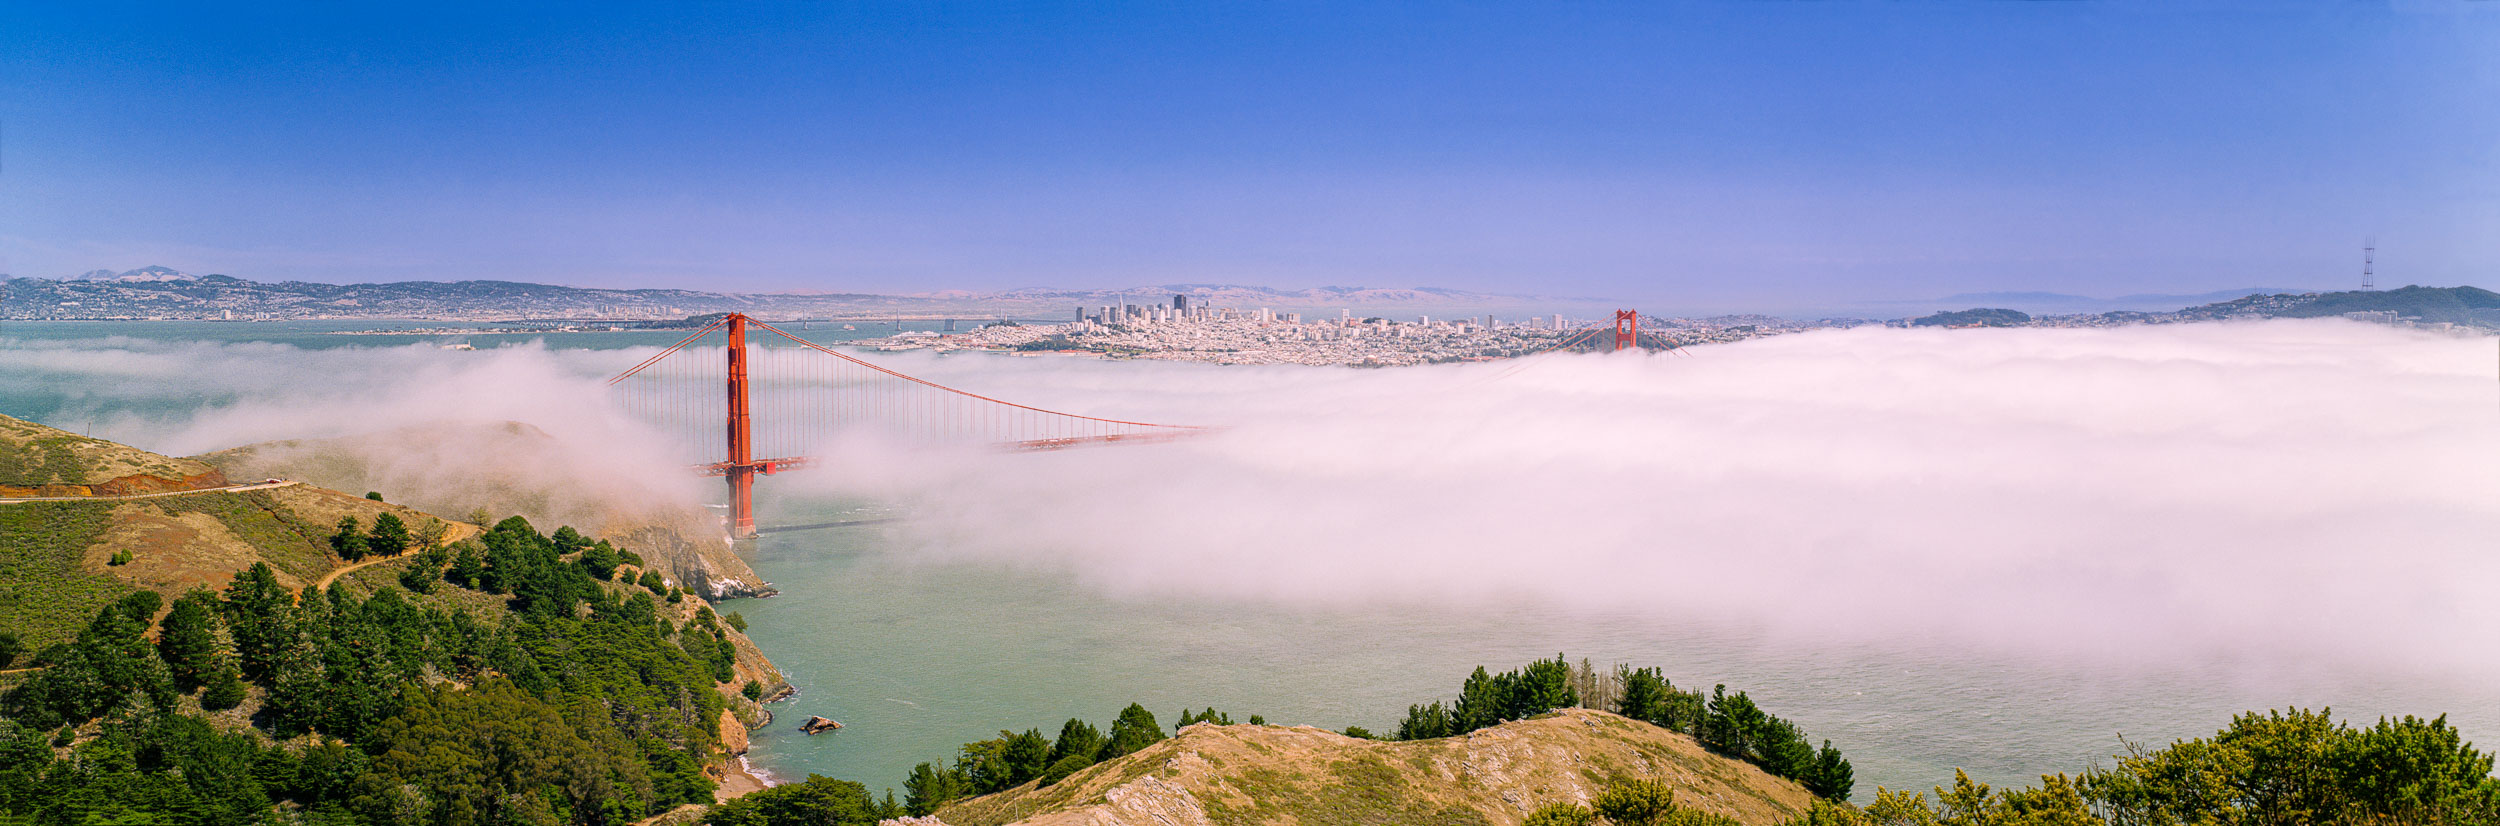 Golden Gate Bridge, SanFrancisco